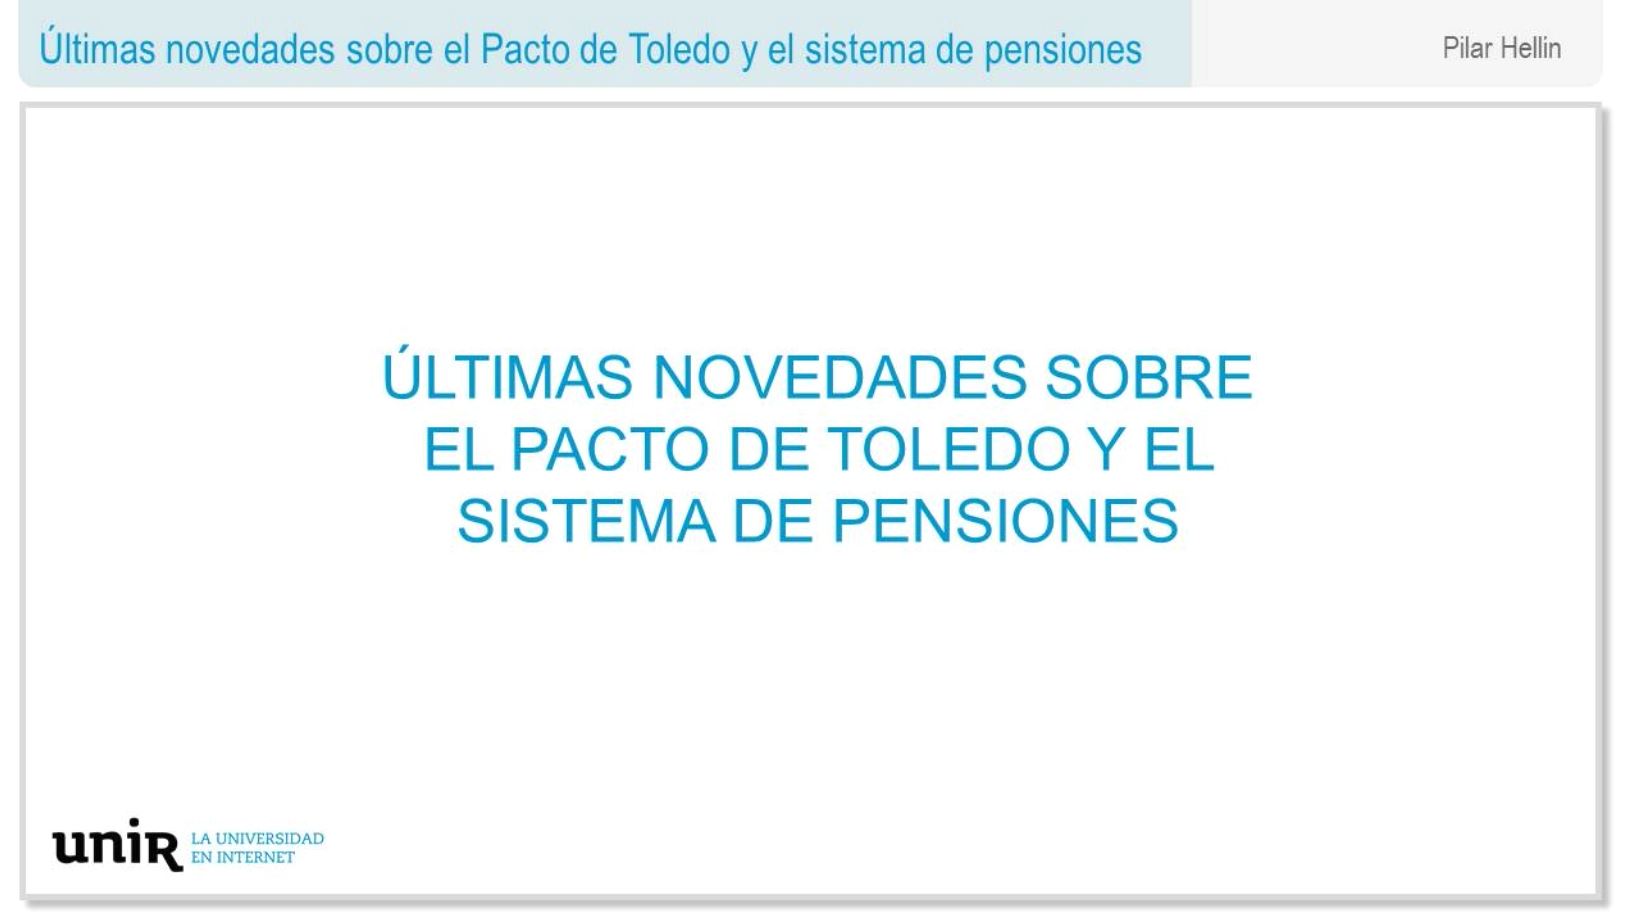 Ultimas-novedades-sobre-el-Pacto-de-Toledo-y-el-sistema-de-pensiones